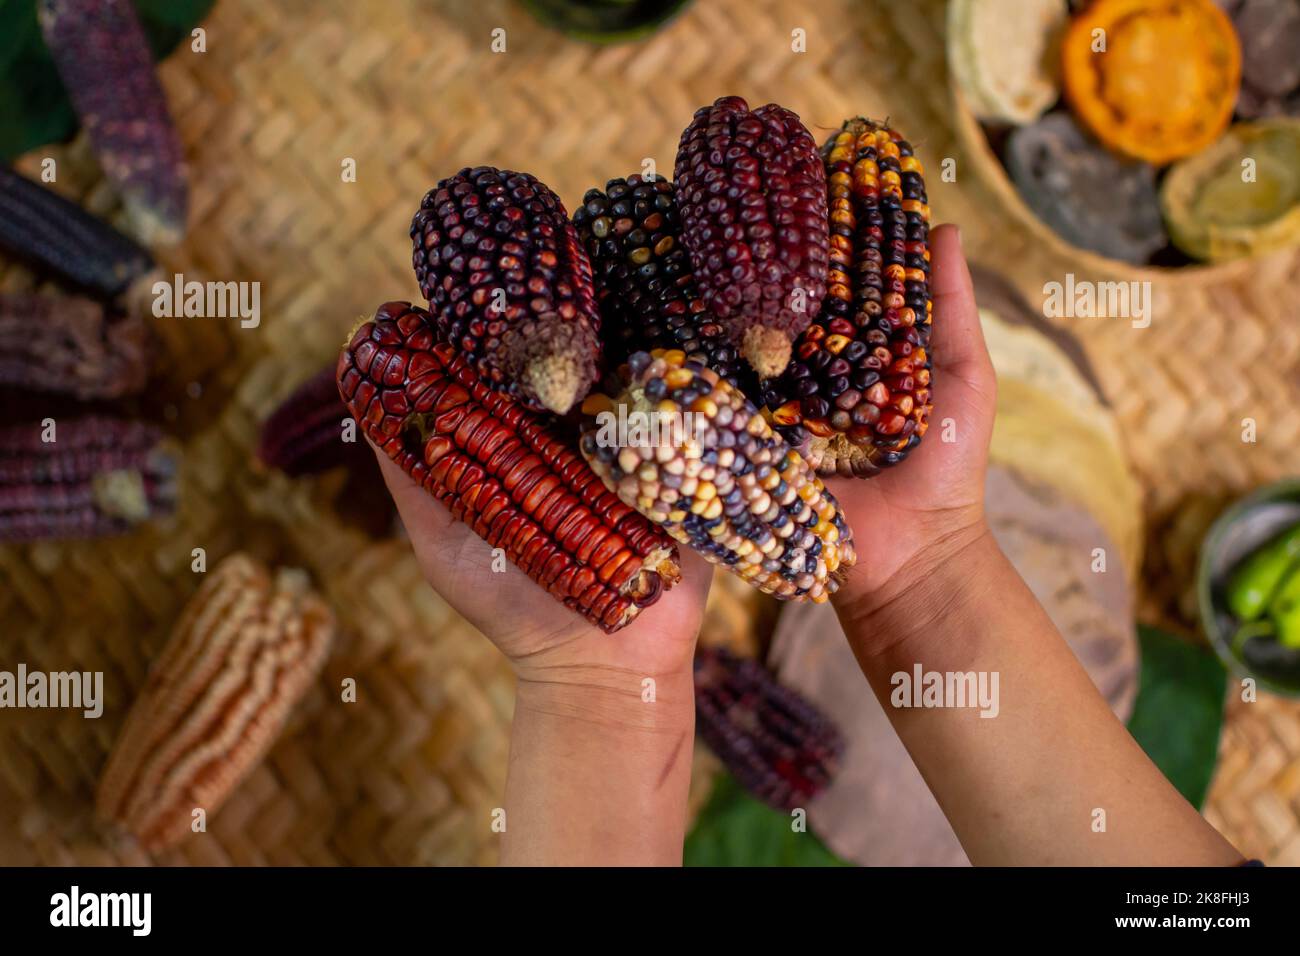 Hände einer Person, die einen Haufen mexikanischer Maiskolben hält Stockfoto